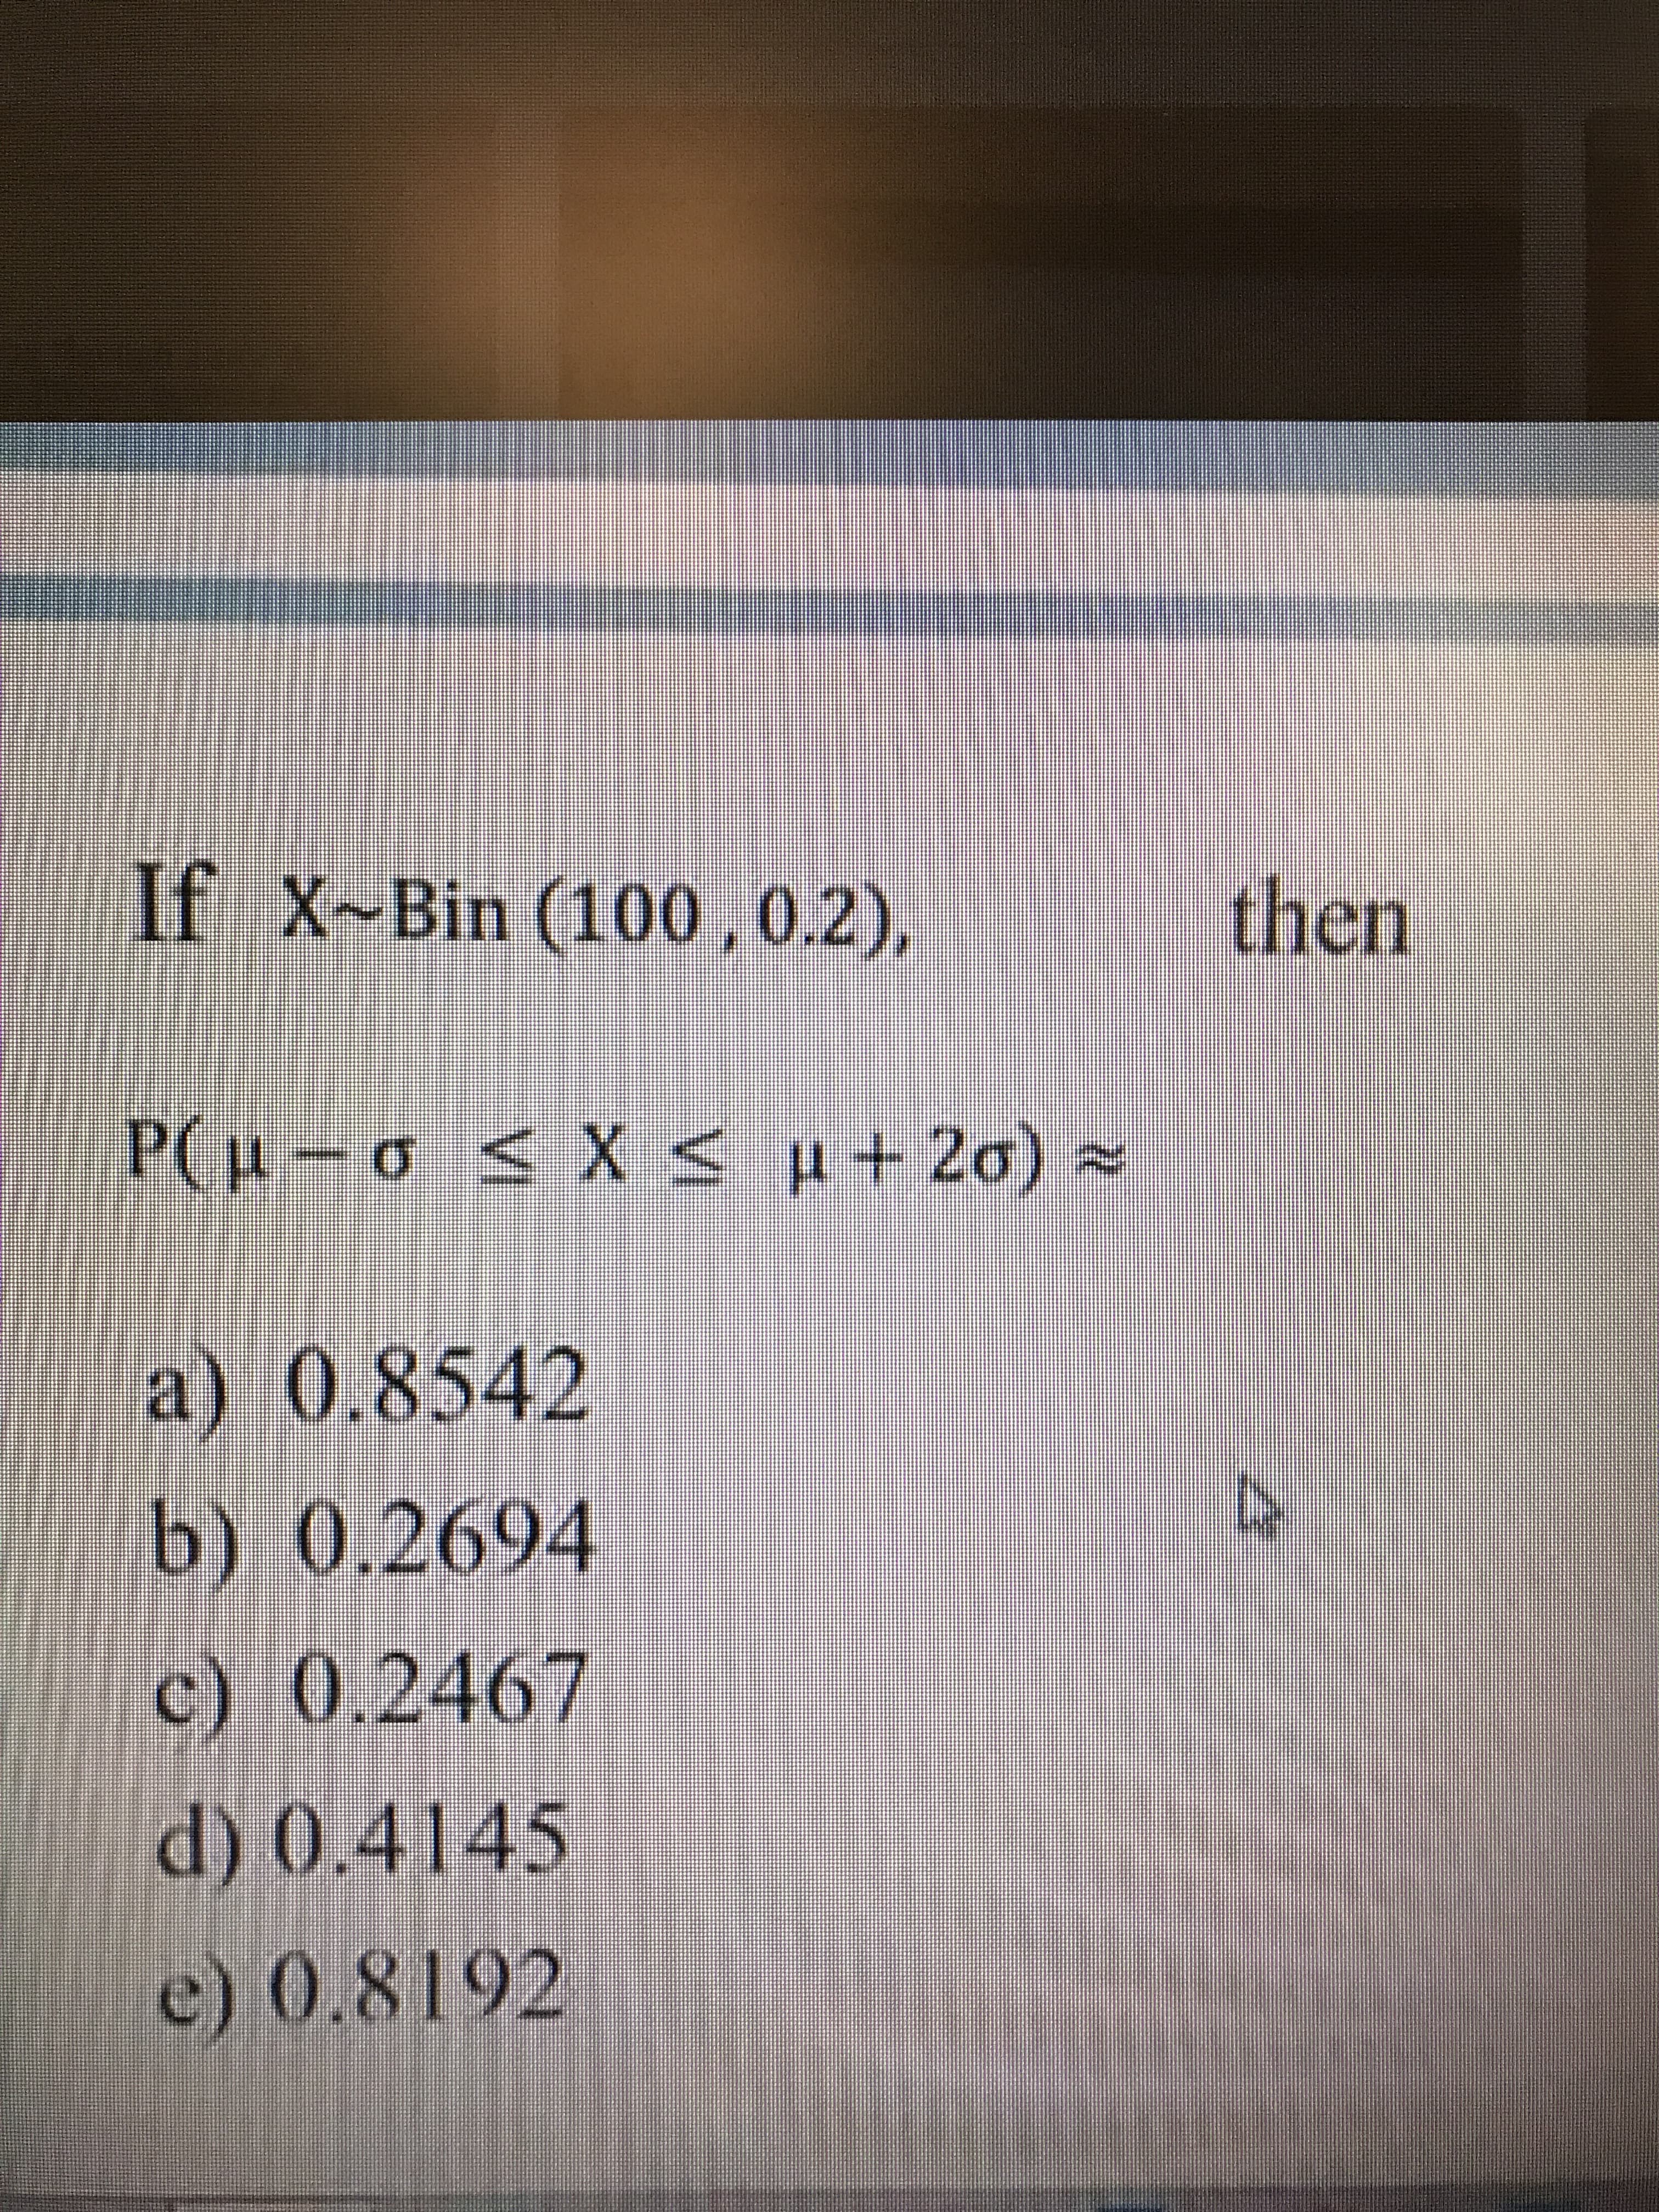 If X-Bin (100,0.2),
then
